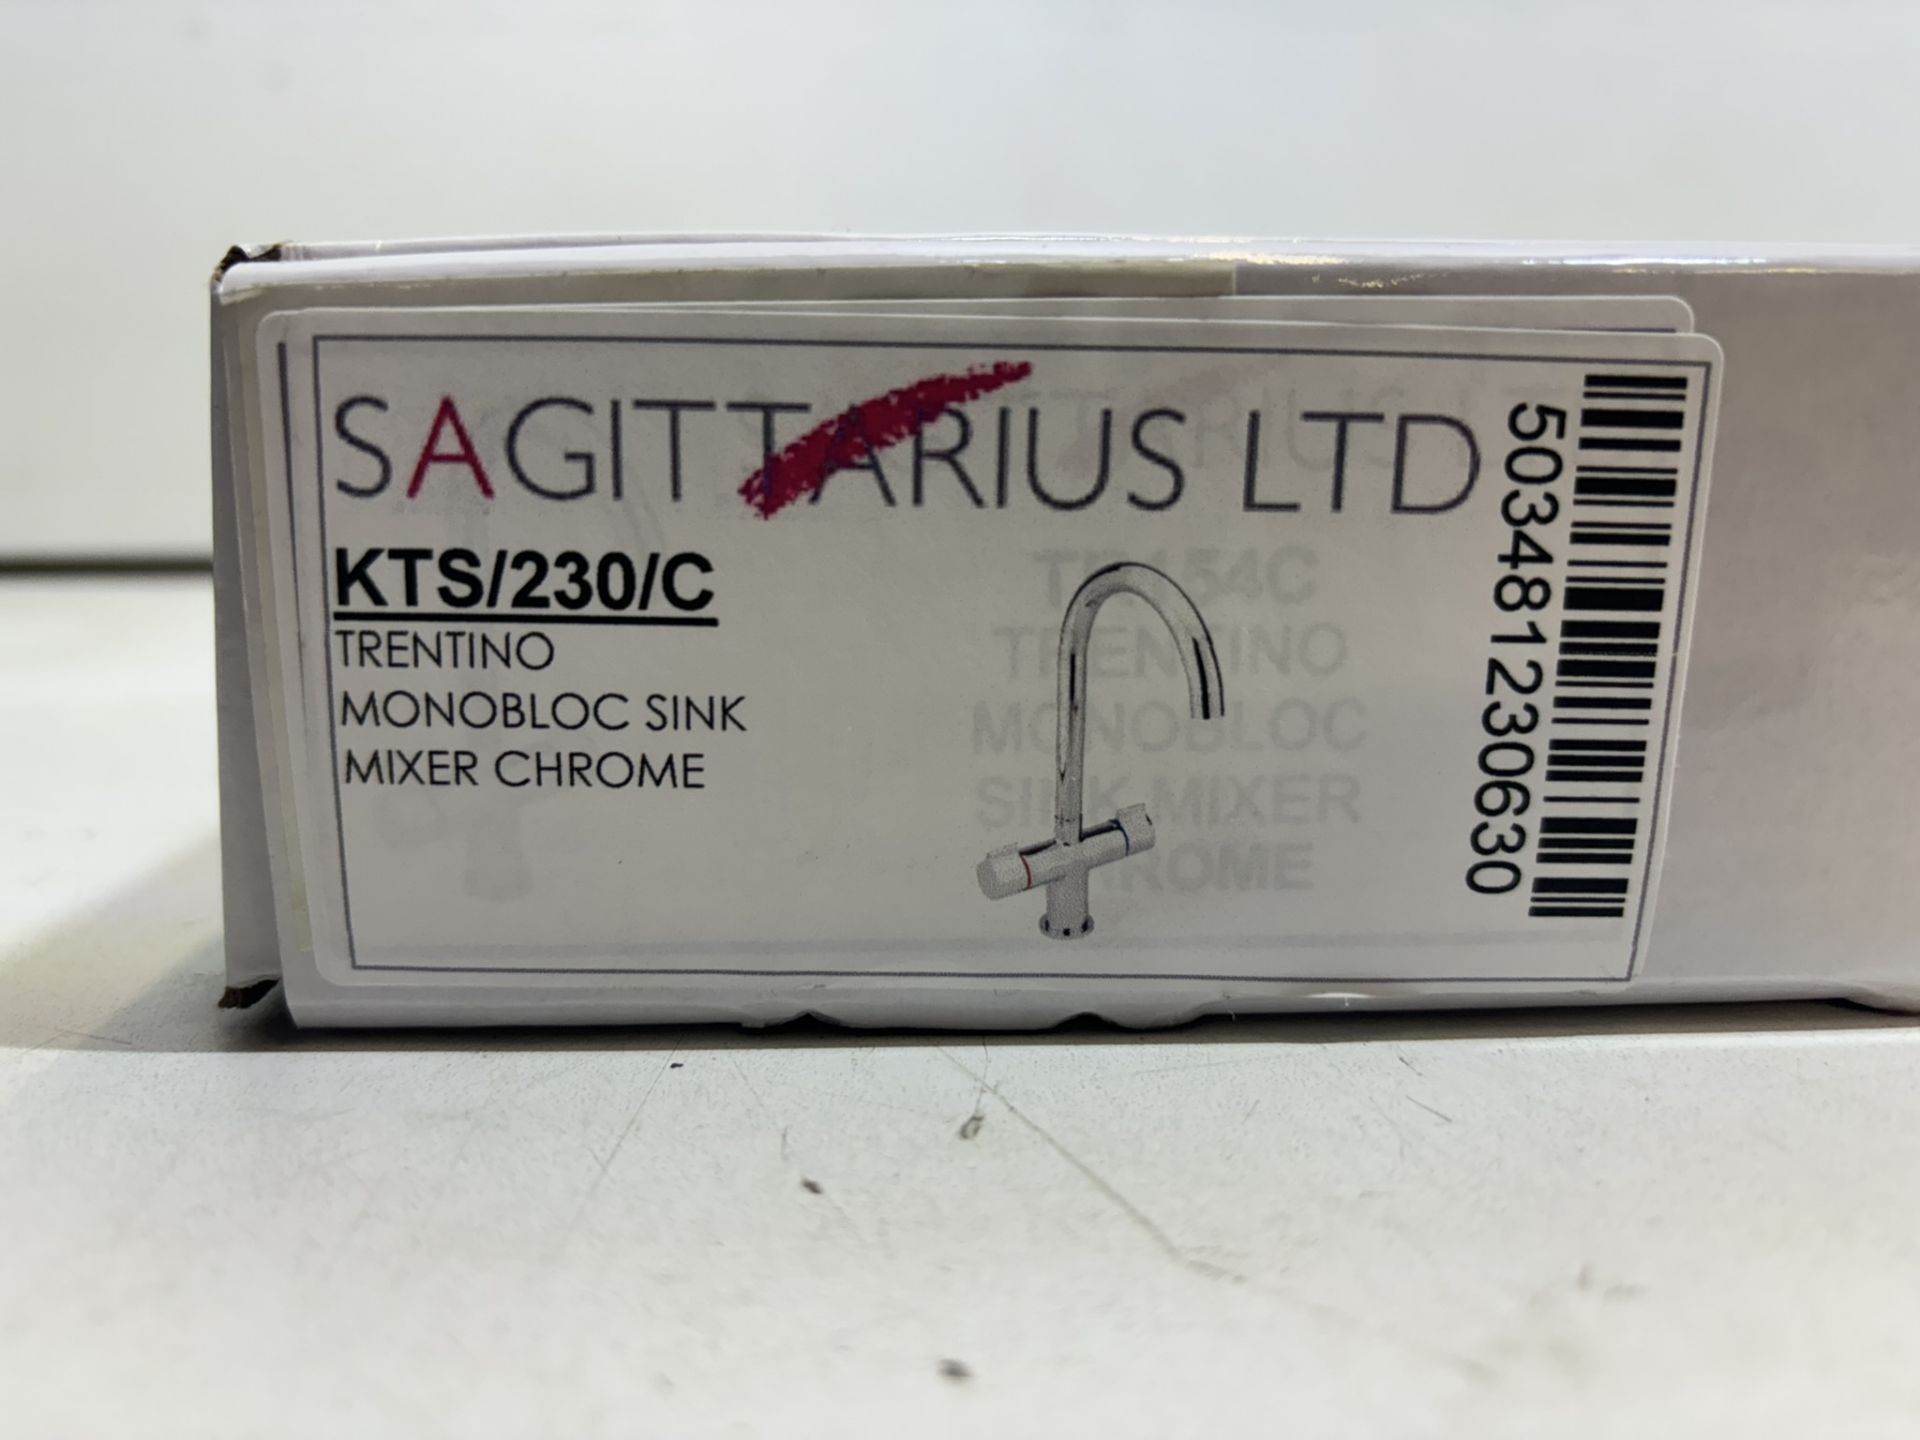 Sagittarius Ltd KTS/230/C Torentino Monobloc Sink Mixer Chrome - Bild 2 aus 4